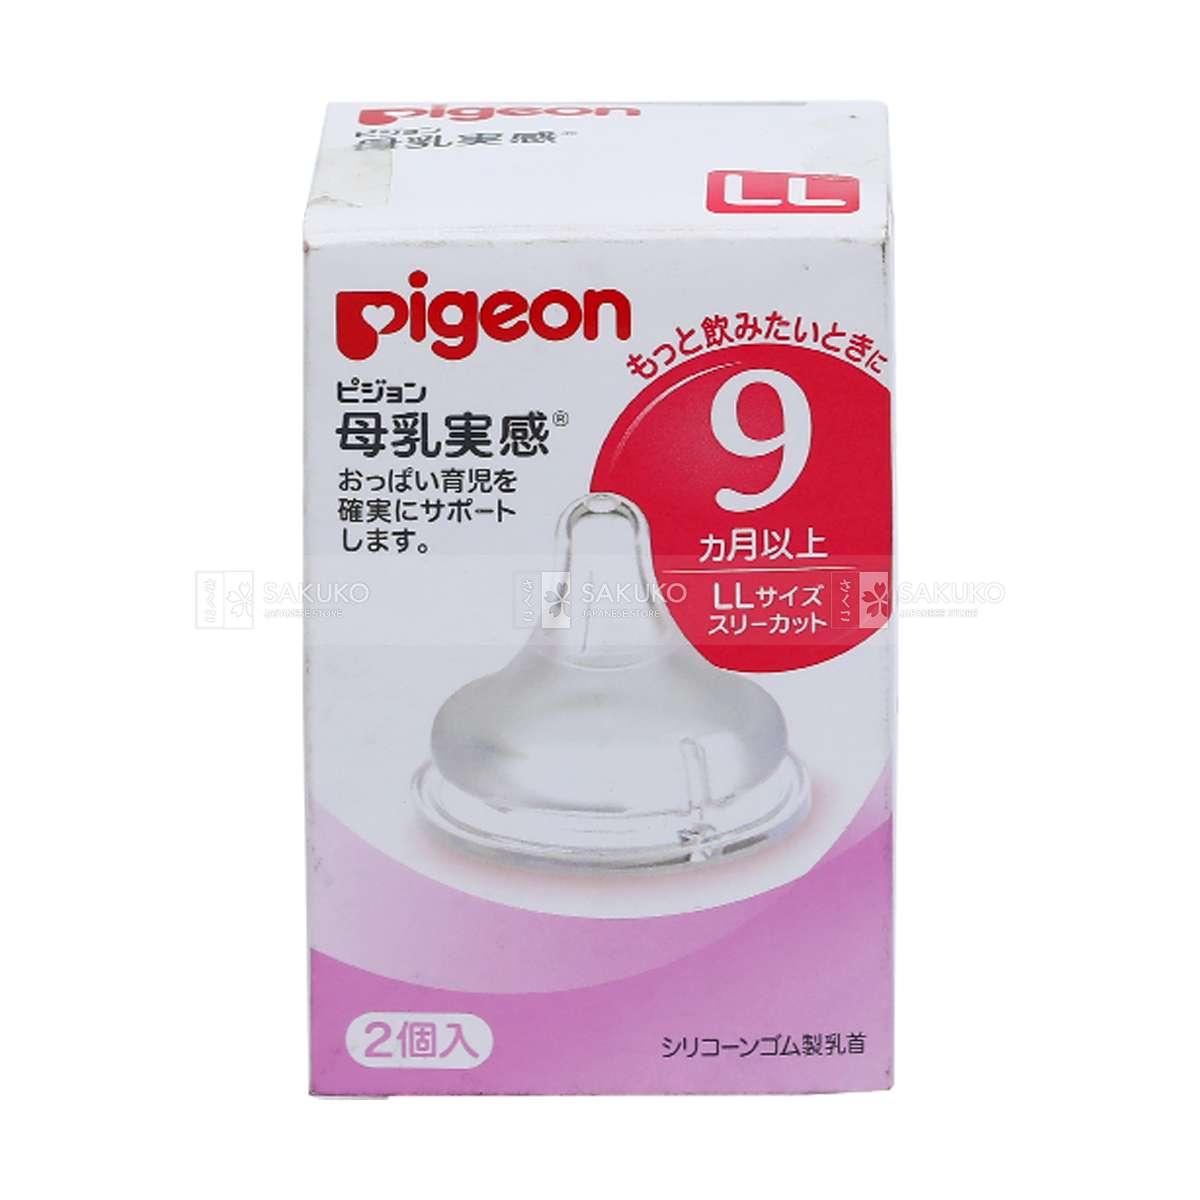 PIGEON- Núm ti bình cổ rộng LL- 9 tháng (2 cái)